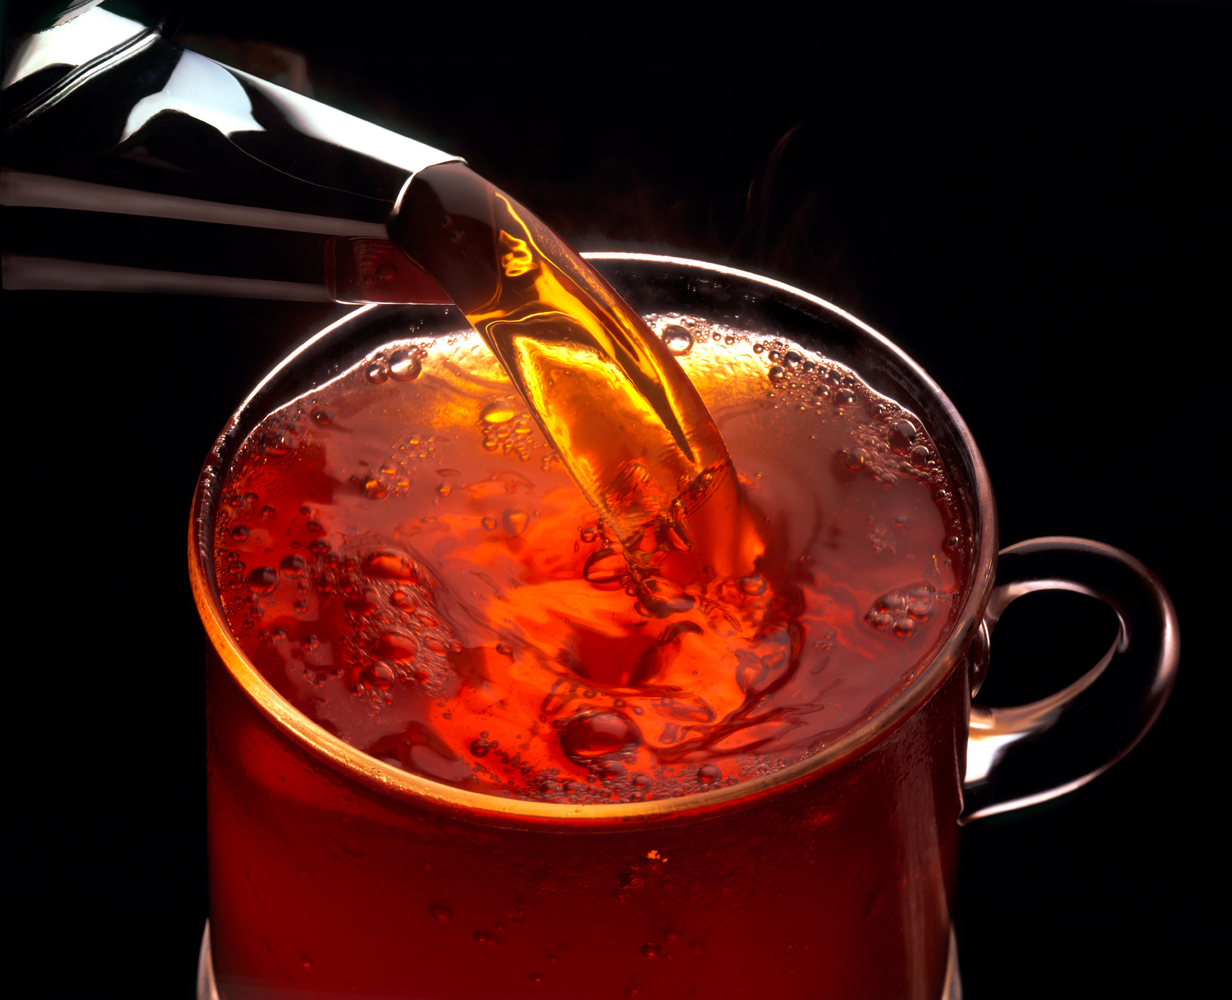 a shinny metal tea pout spout pours hot redish tea into a glass cup